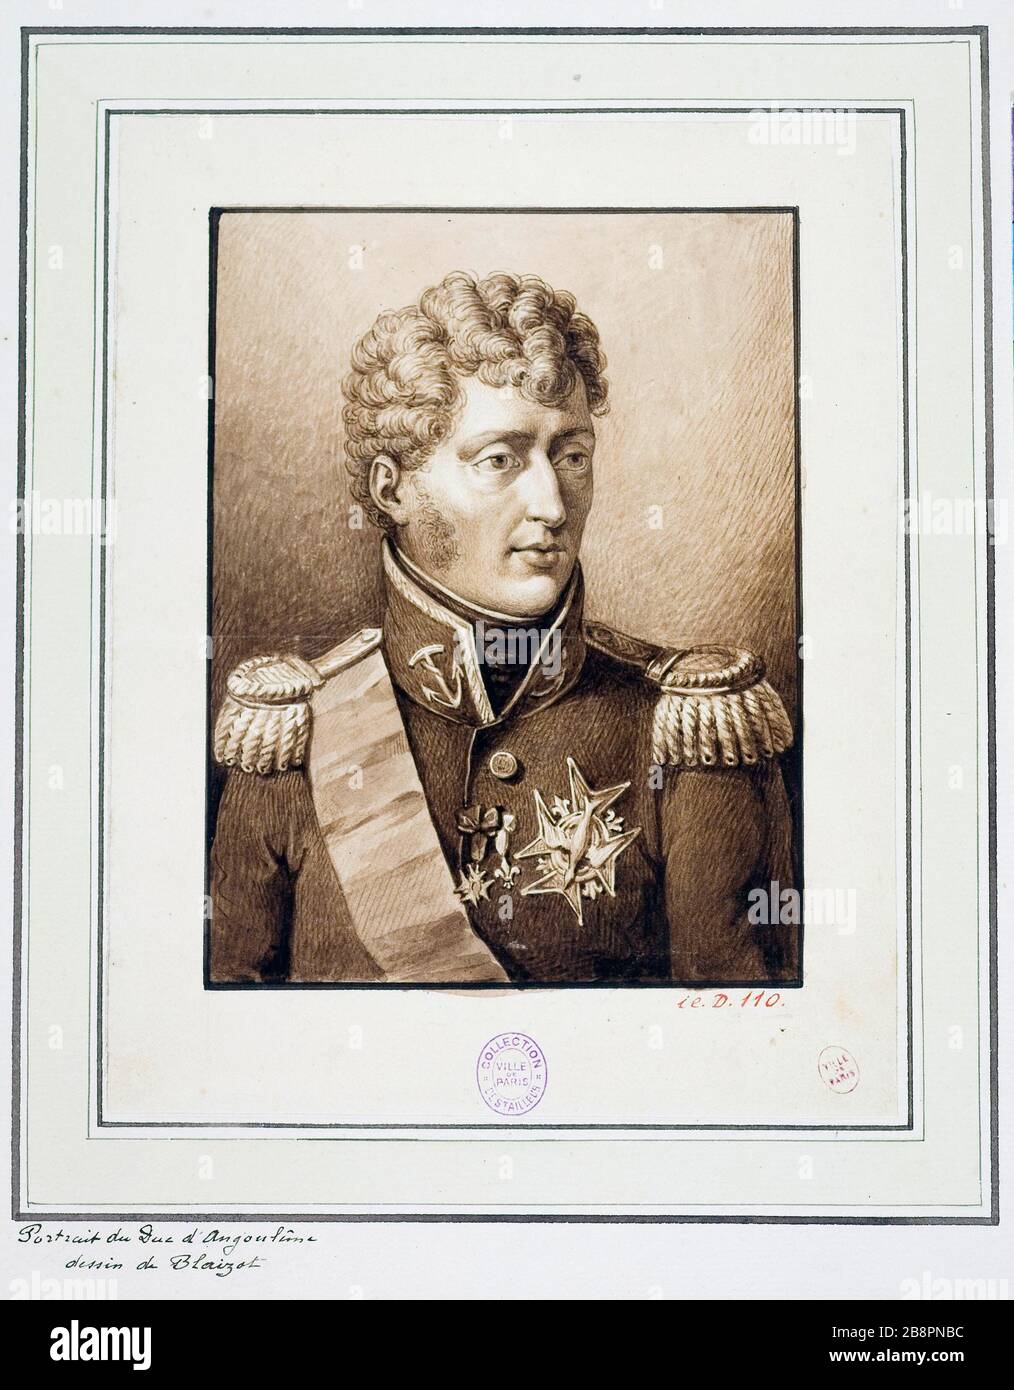 RITRATTO DEL DUCA D'ANGOULEME Eugène Blaisot (né en 1821). 'Portrait du duc d'Angoulême'. Lavis au trait. Parigi, musée Carnavalet. Foto Stock